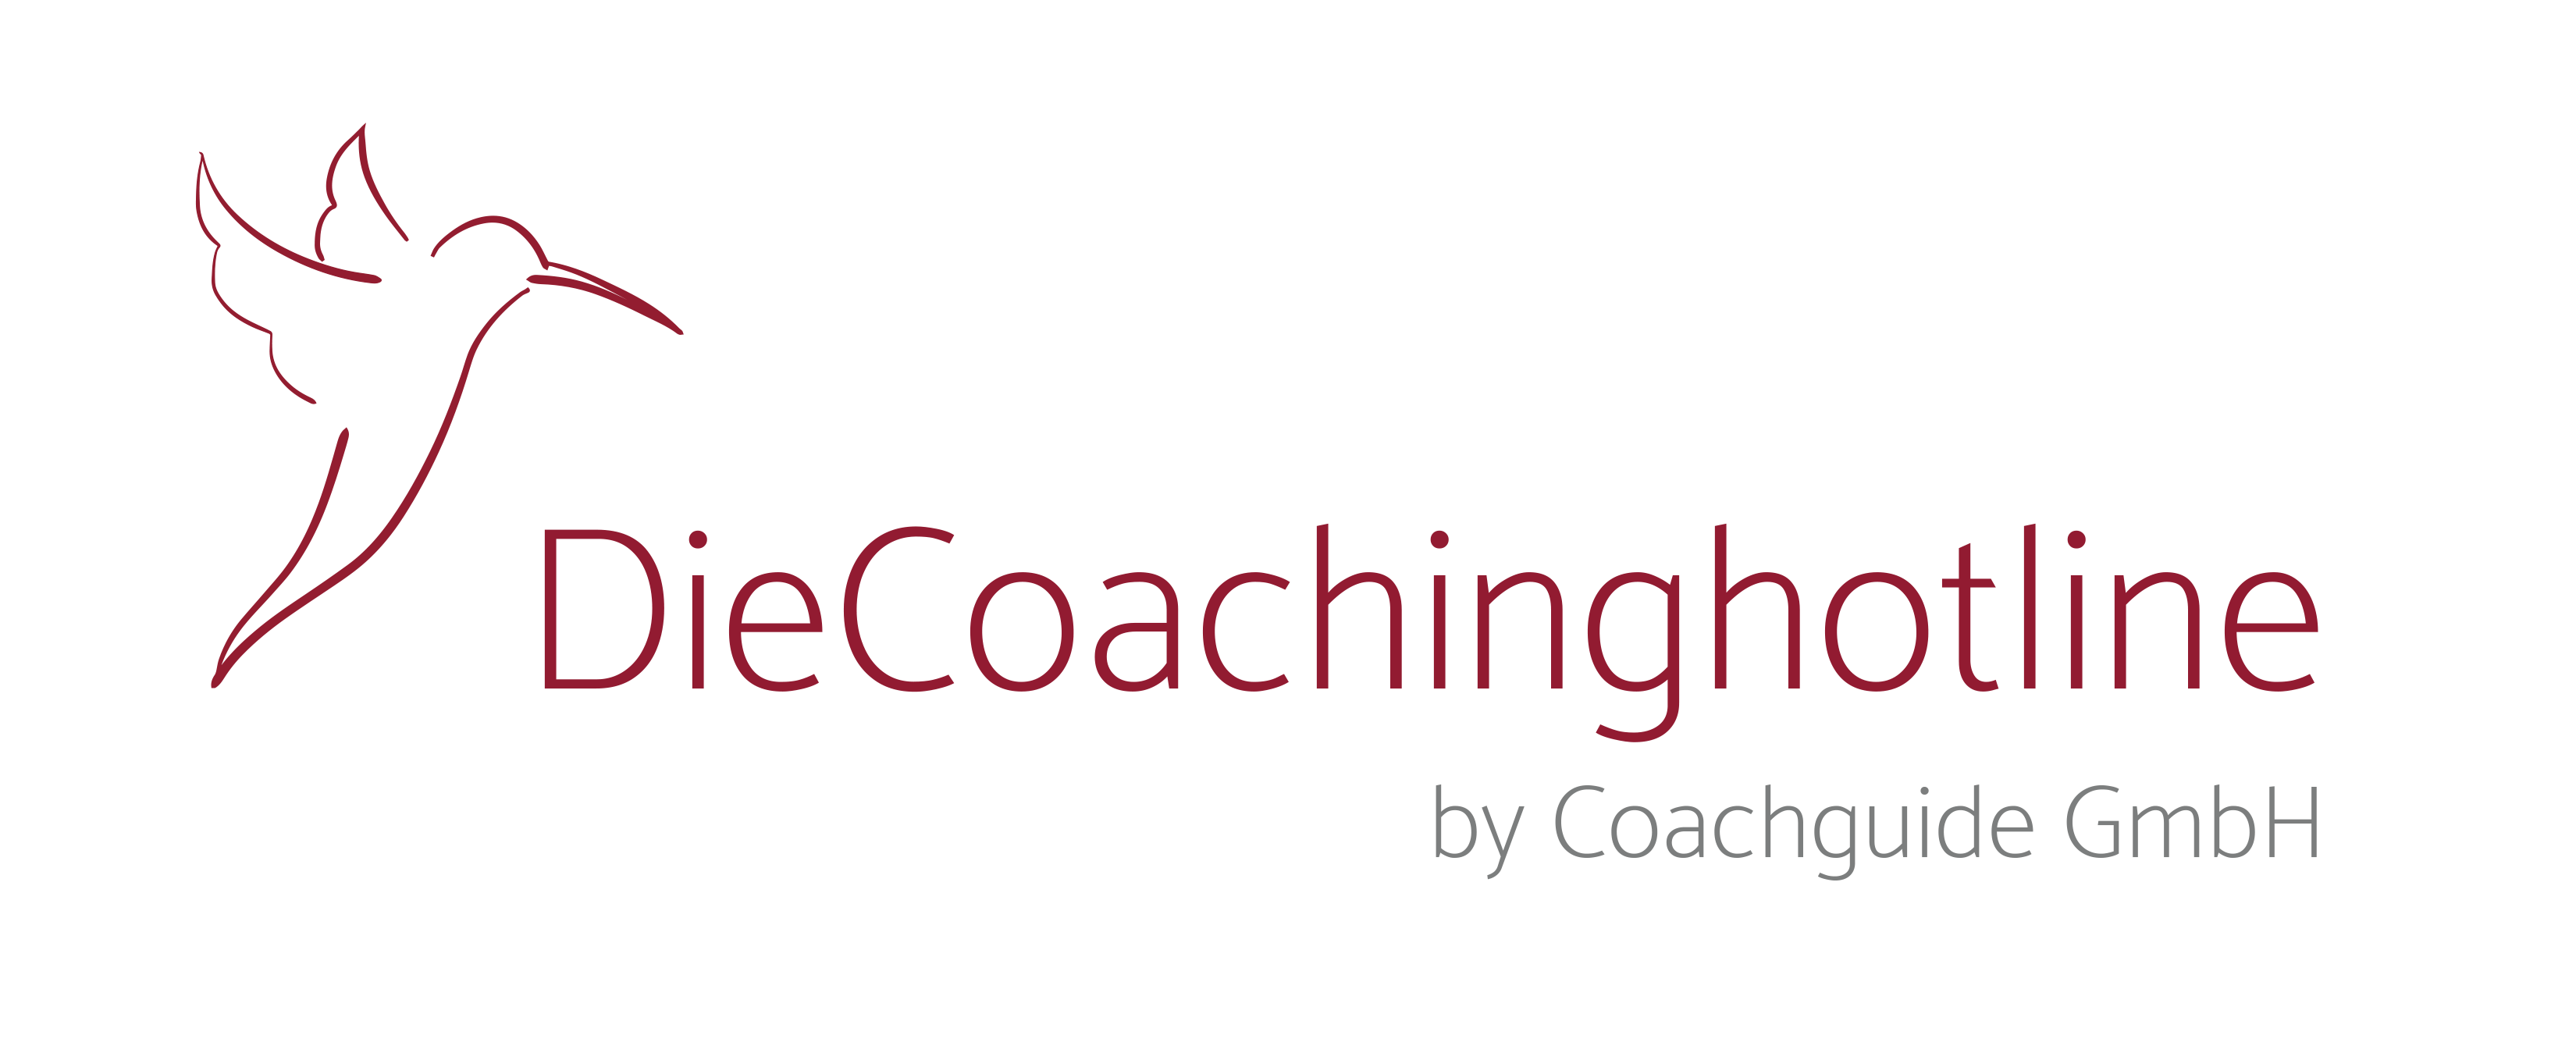 Die Coachinghotline